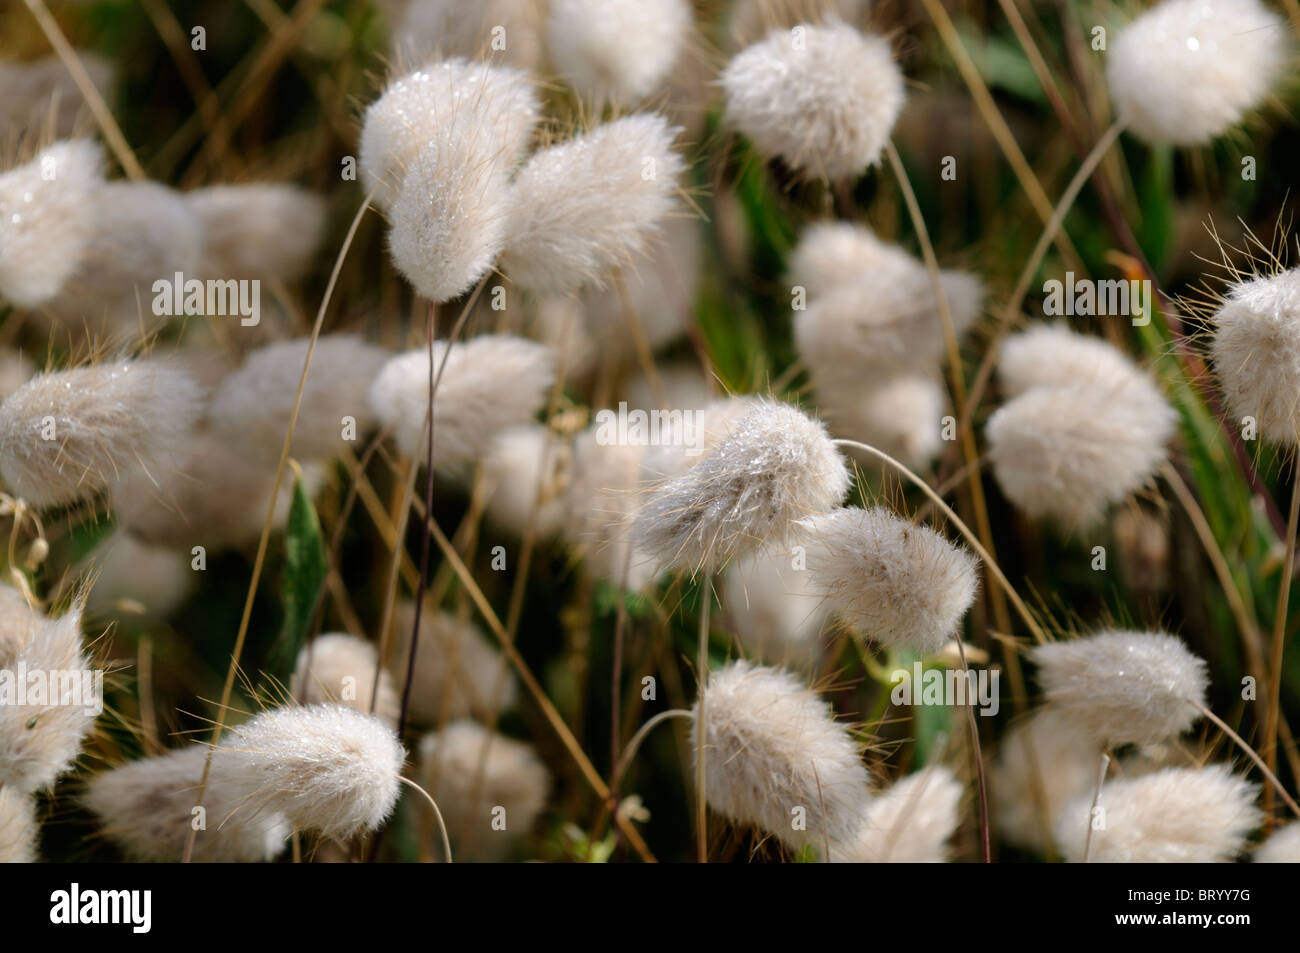 Lagurus Ovatus Hasen tail Bunny Tail Grass Rispe Blütenstand des Kaninchens-Tail jährliche Zierpflanze cremig weiße Granne Stockfoto